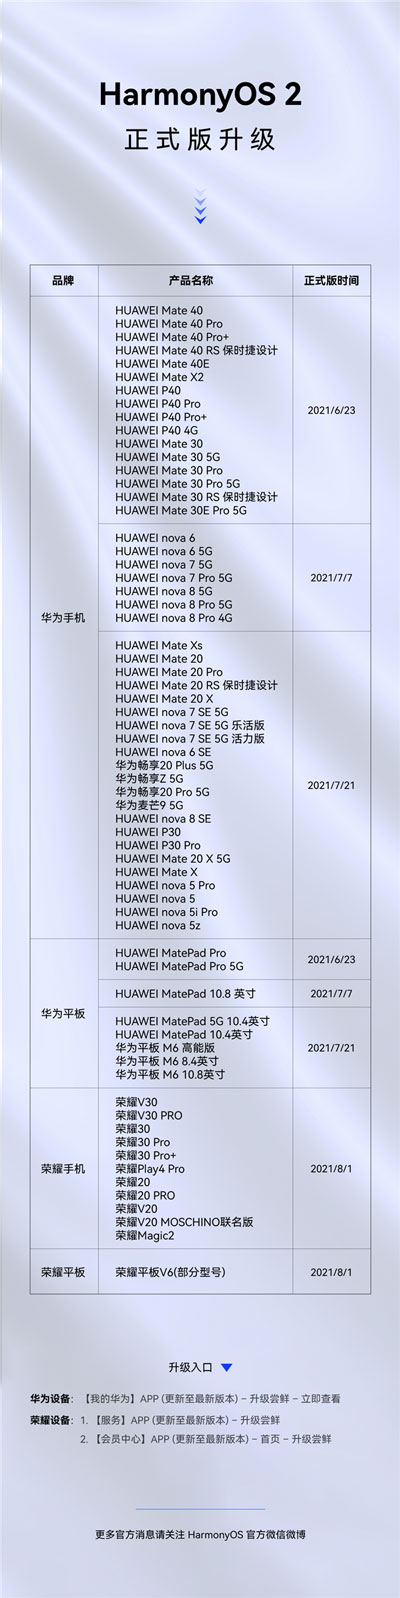 鸿蒙OS 2 正式版升级进展，已有65款机型开启升级